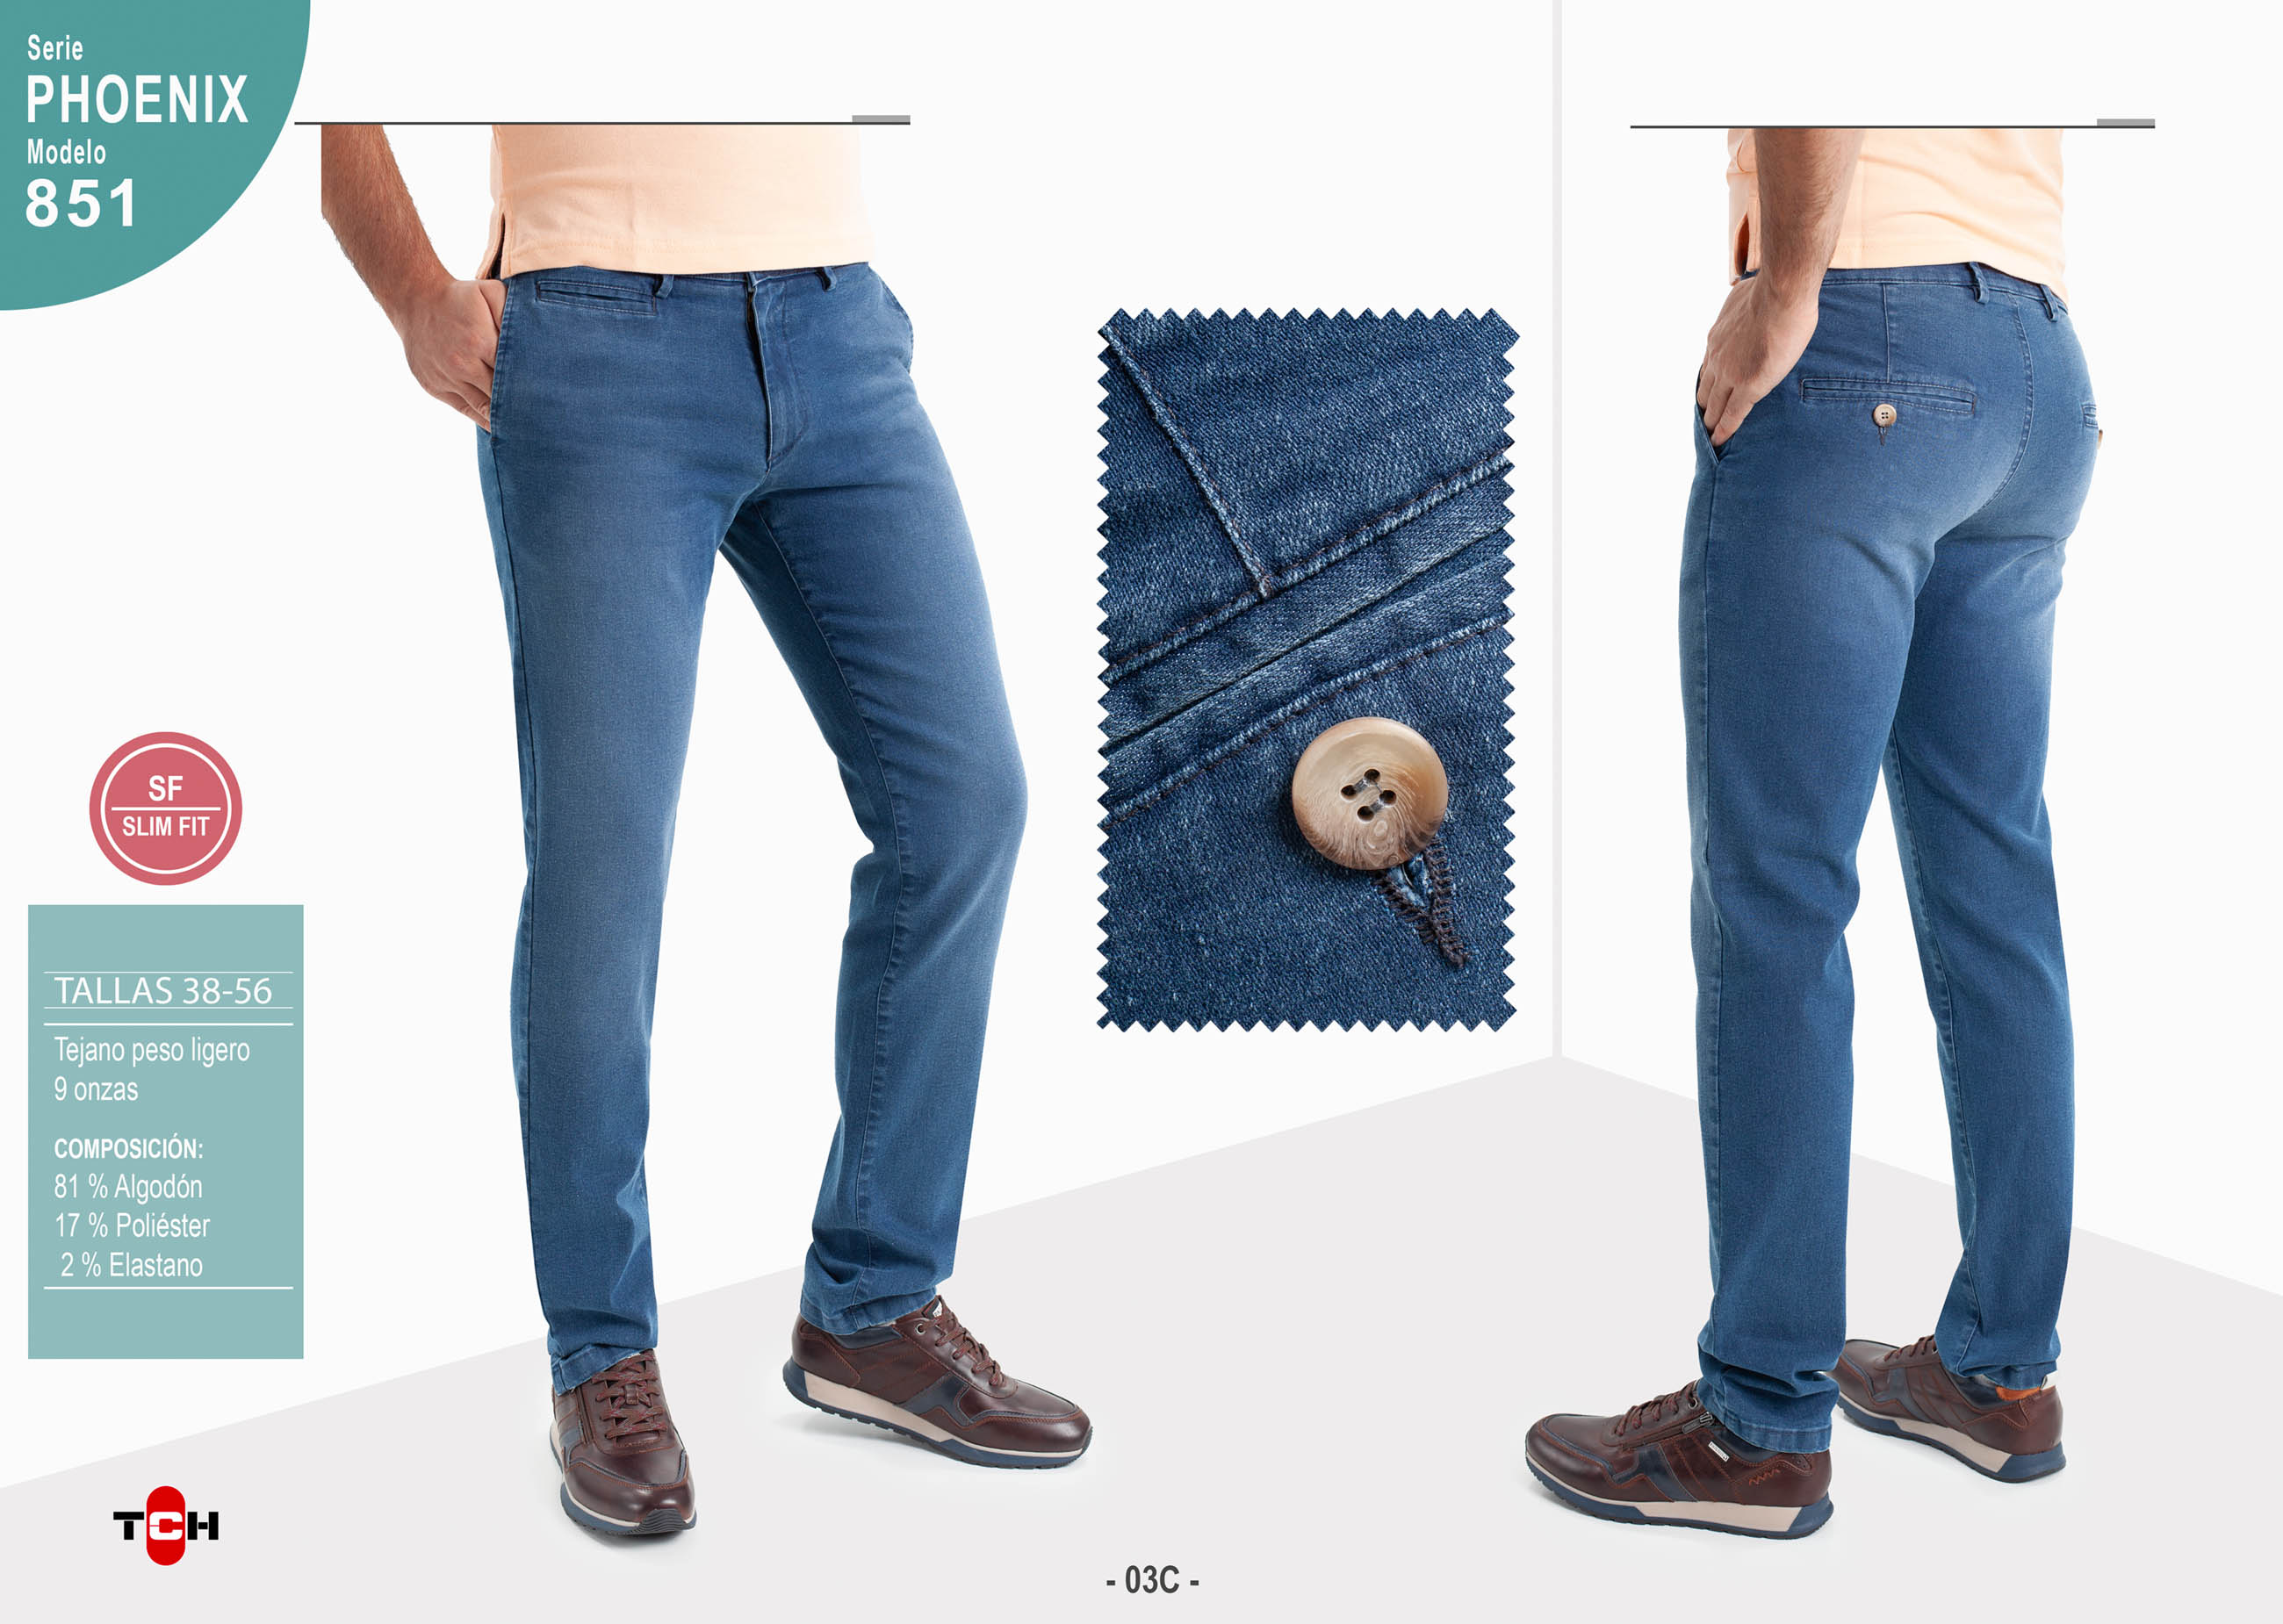 Pantalón de hombre TCH Casual Sport tipo chino tejido vaquero denim lavado azul medio de algodón, poliester con lycra SLIM fabricado en España.